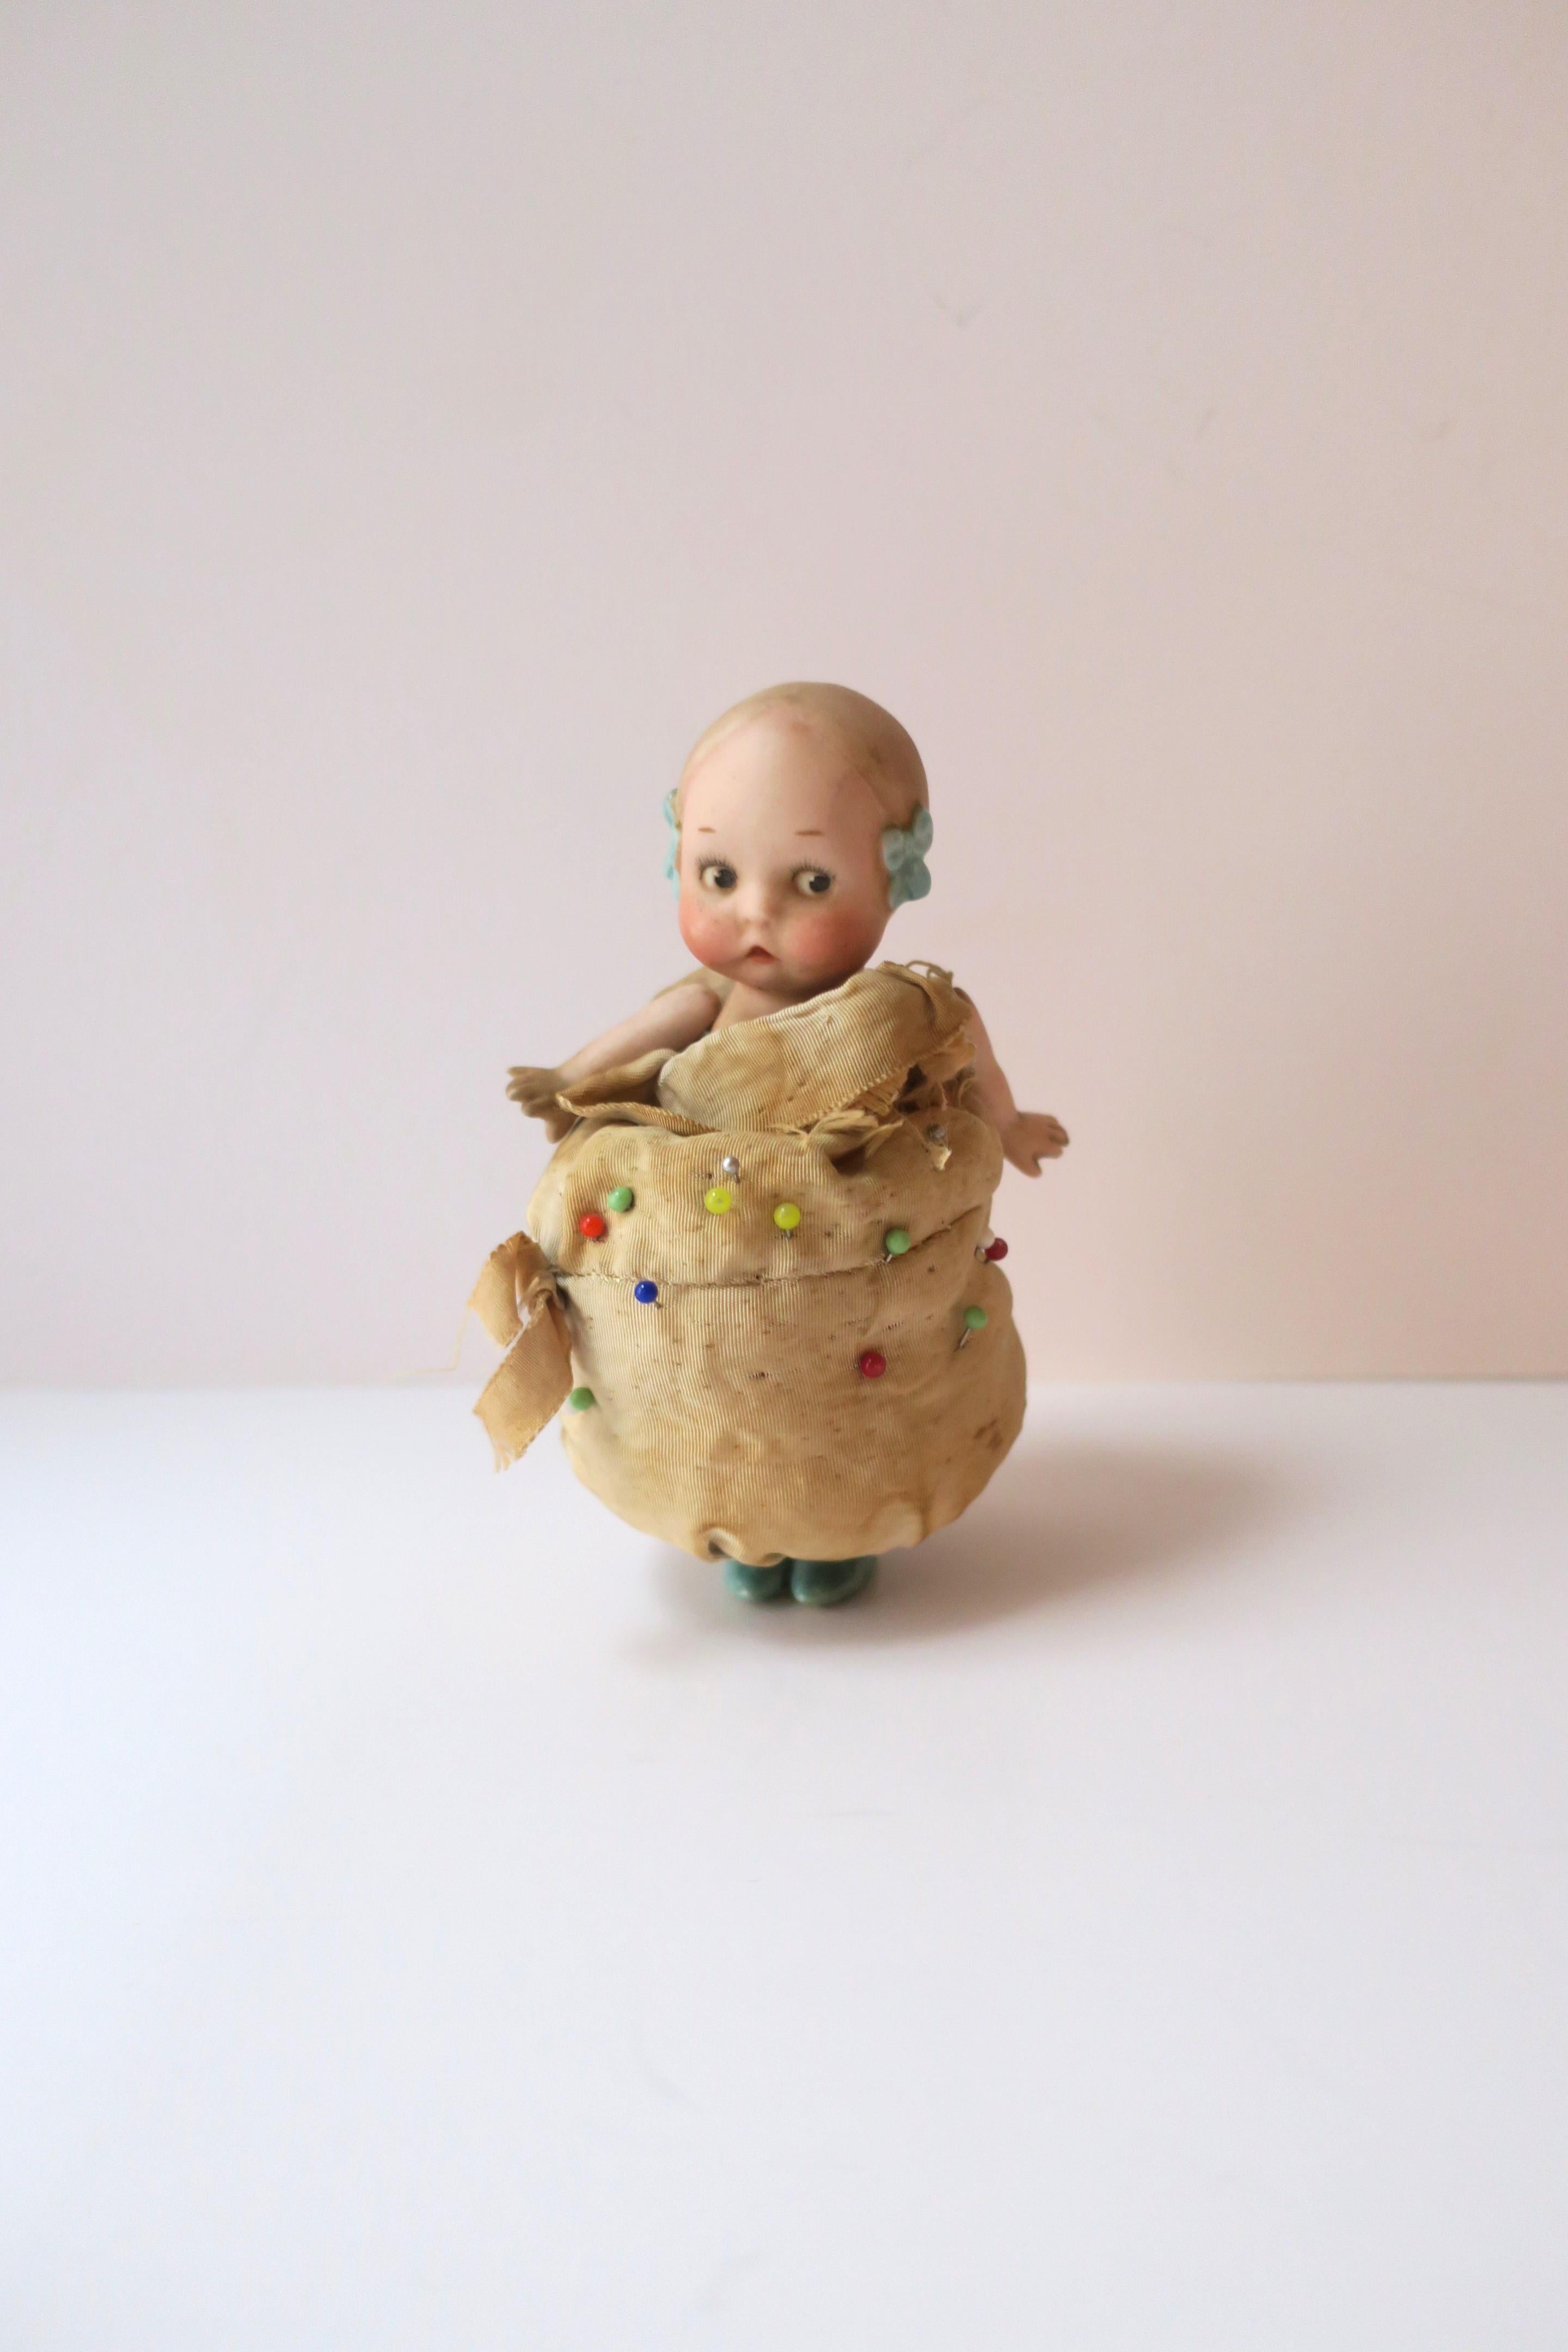 Coussin à épingles en porcelaine représentant une petite fille, vers le début du 20e siècle. Cette poupée en porcelaine, avec une robe en coussin d'épingles, est représentée avec un beau visage, des joues roses, des nœuds bleus dans les cheveux, un